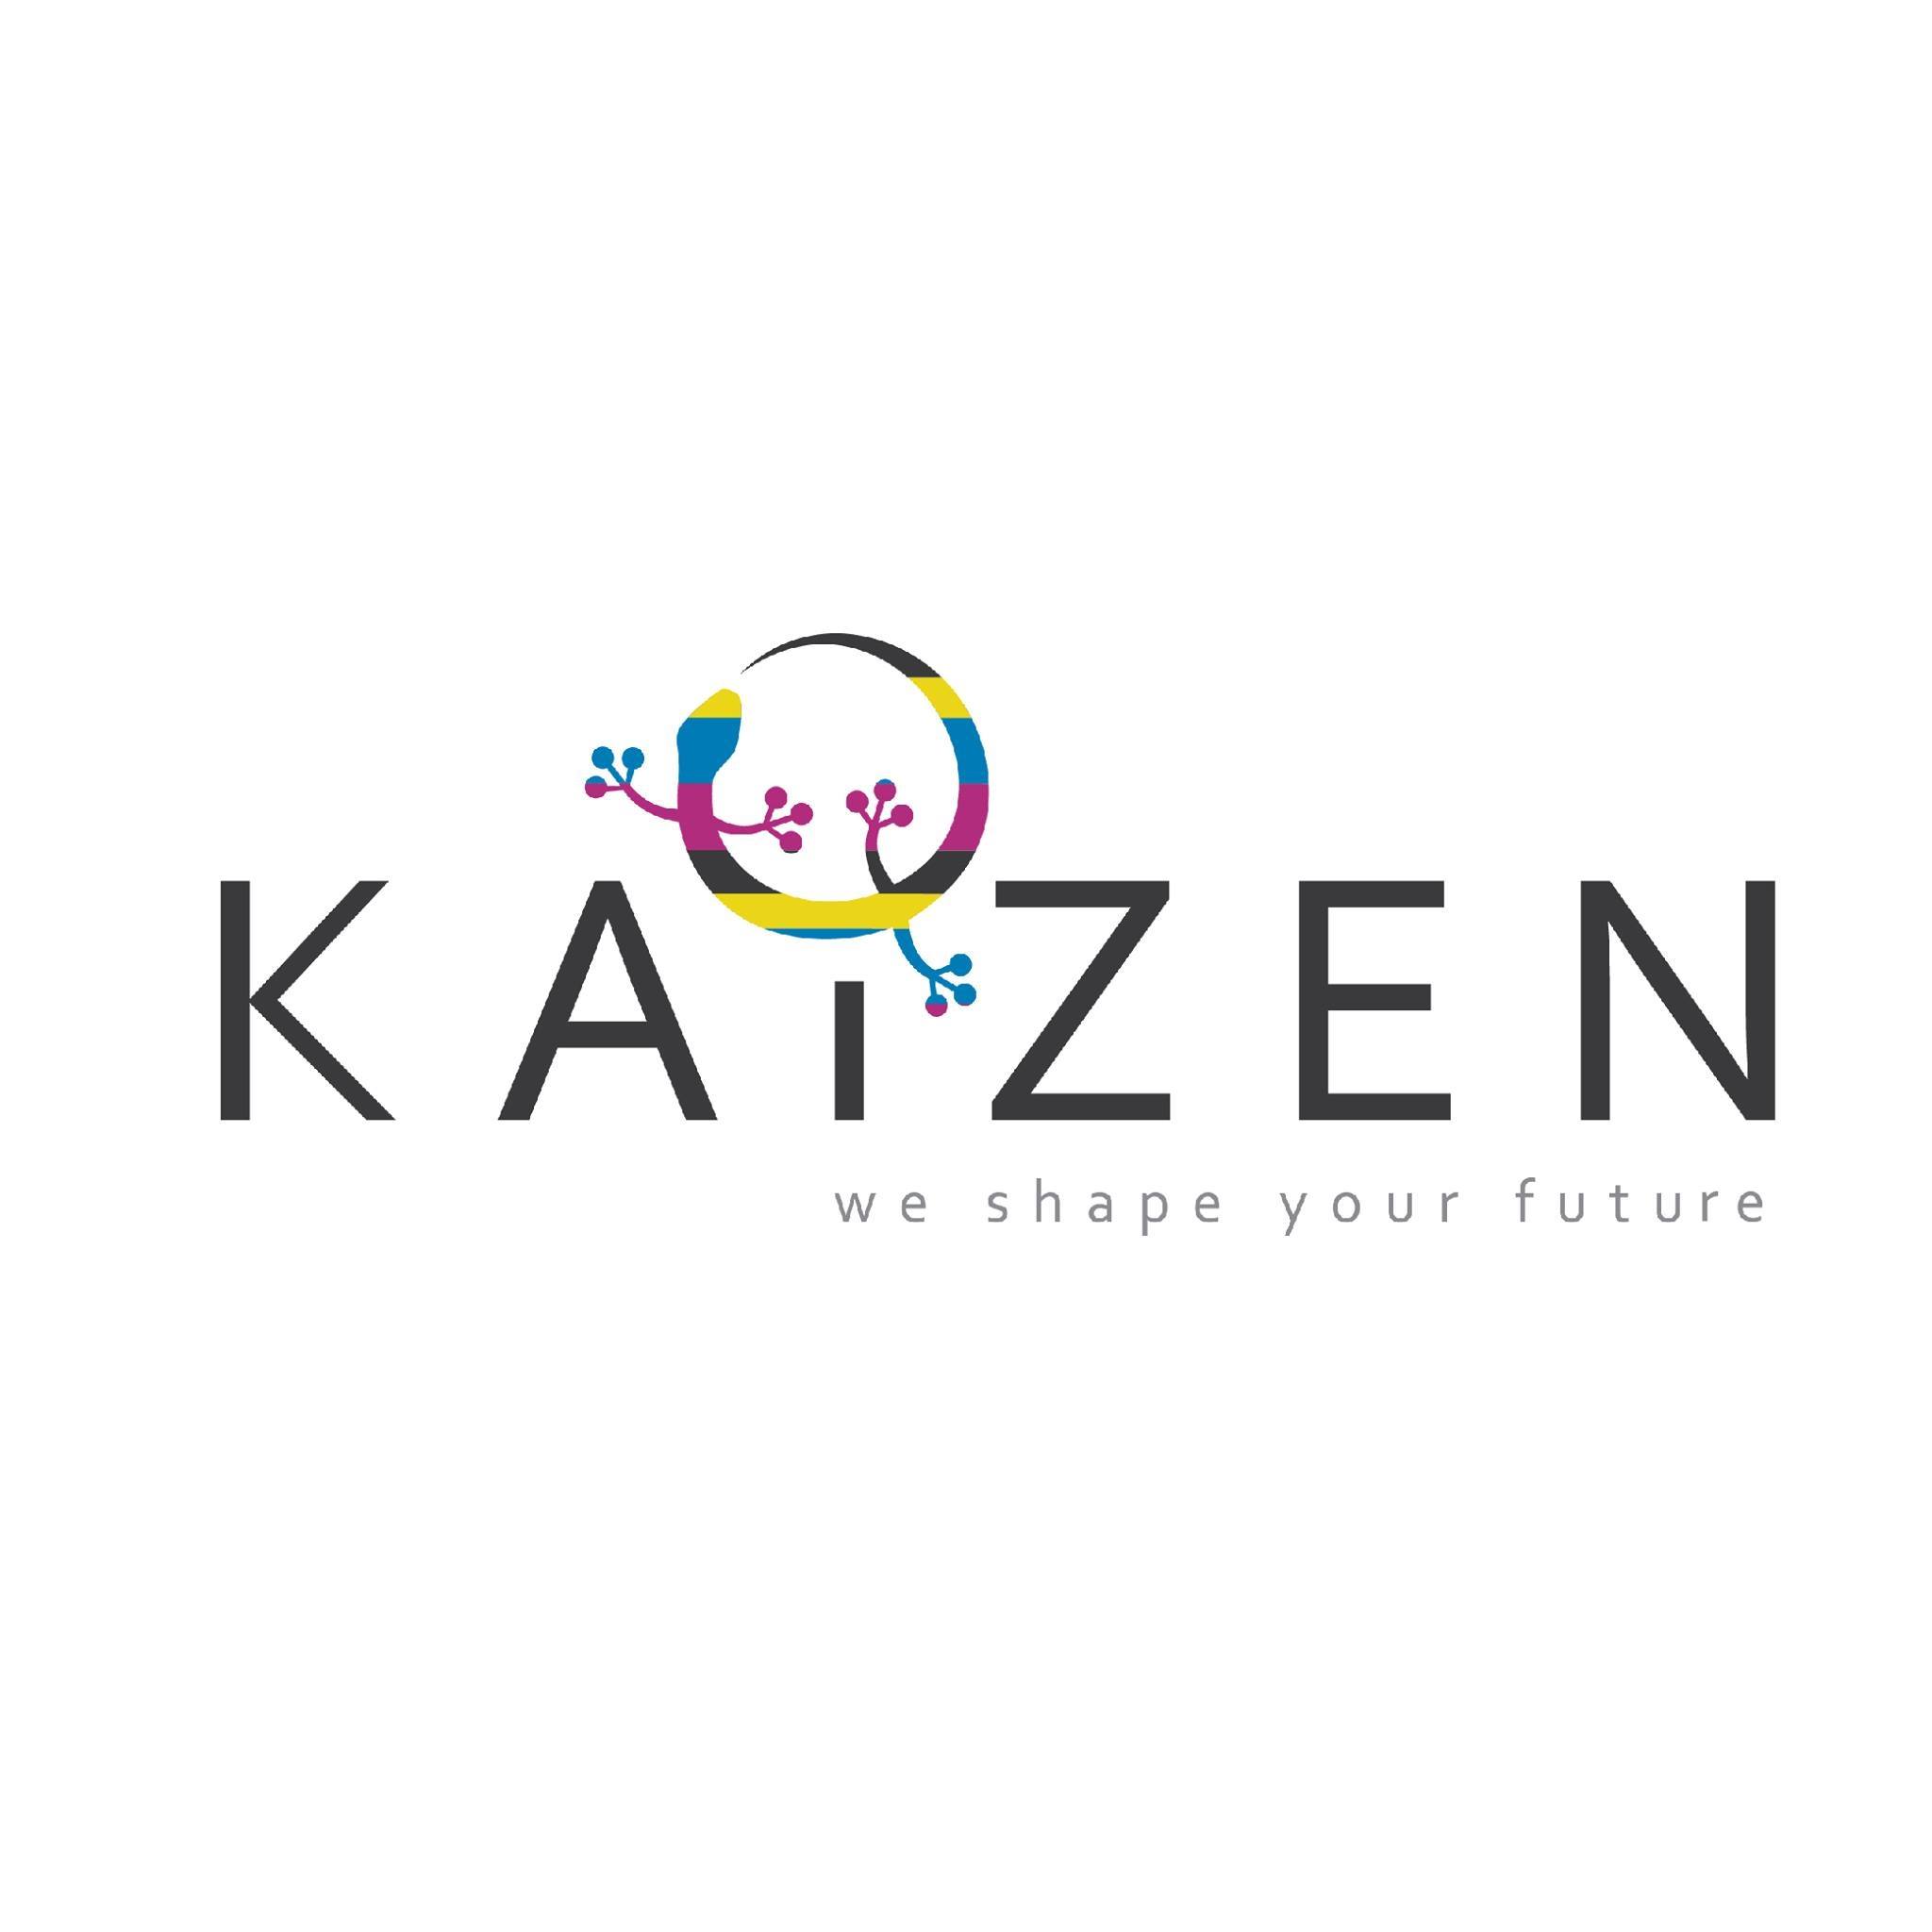 شركة كايزن (Kaizen) أعلنت عبر الحساب الرسمي  الخاص بها من خلال موقع LinkedIn عن توفير وظائف شاغرة تحت المسمى الوظيفي محاسب للعمل في الشركة بمدينة الرياض، وهذا وفقًا للتفاصيل الموجودة بالأسفل.